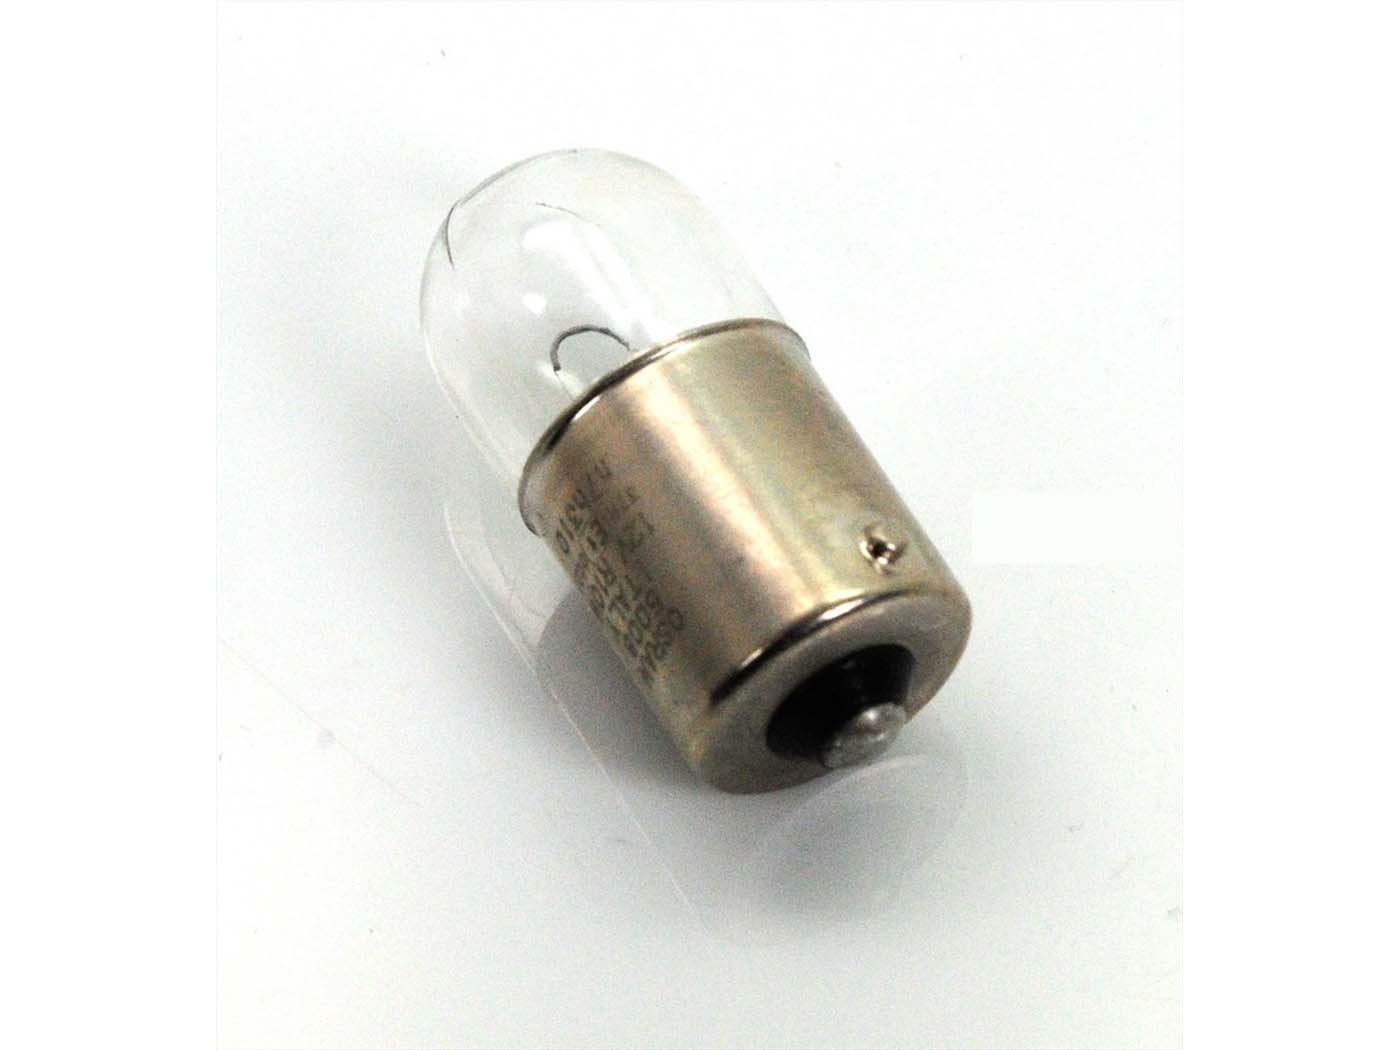 Rear Light Bulb 12 Volt 10 Watt 15mm For Zündapp, Kreidler, Hercules, Puch